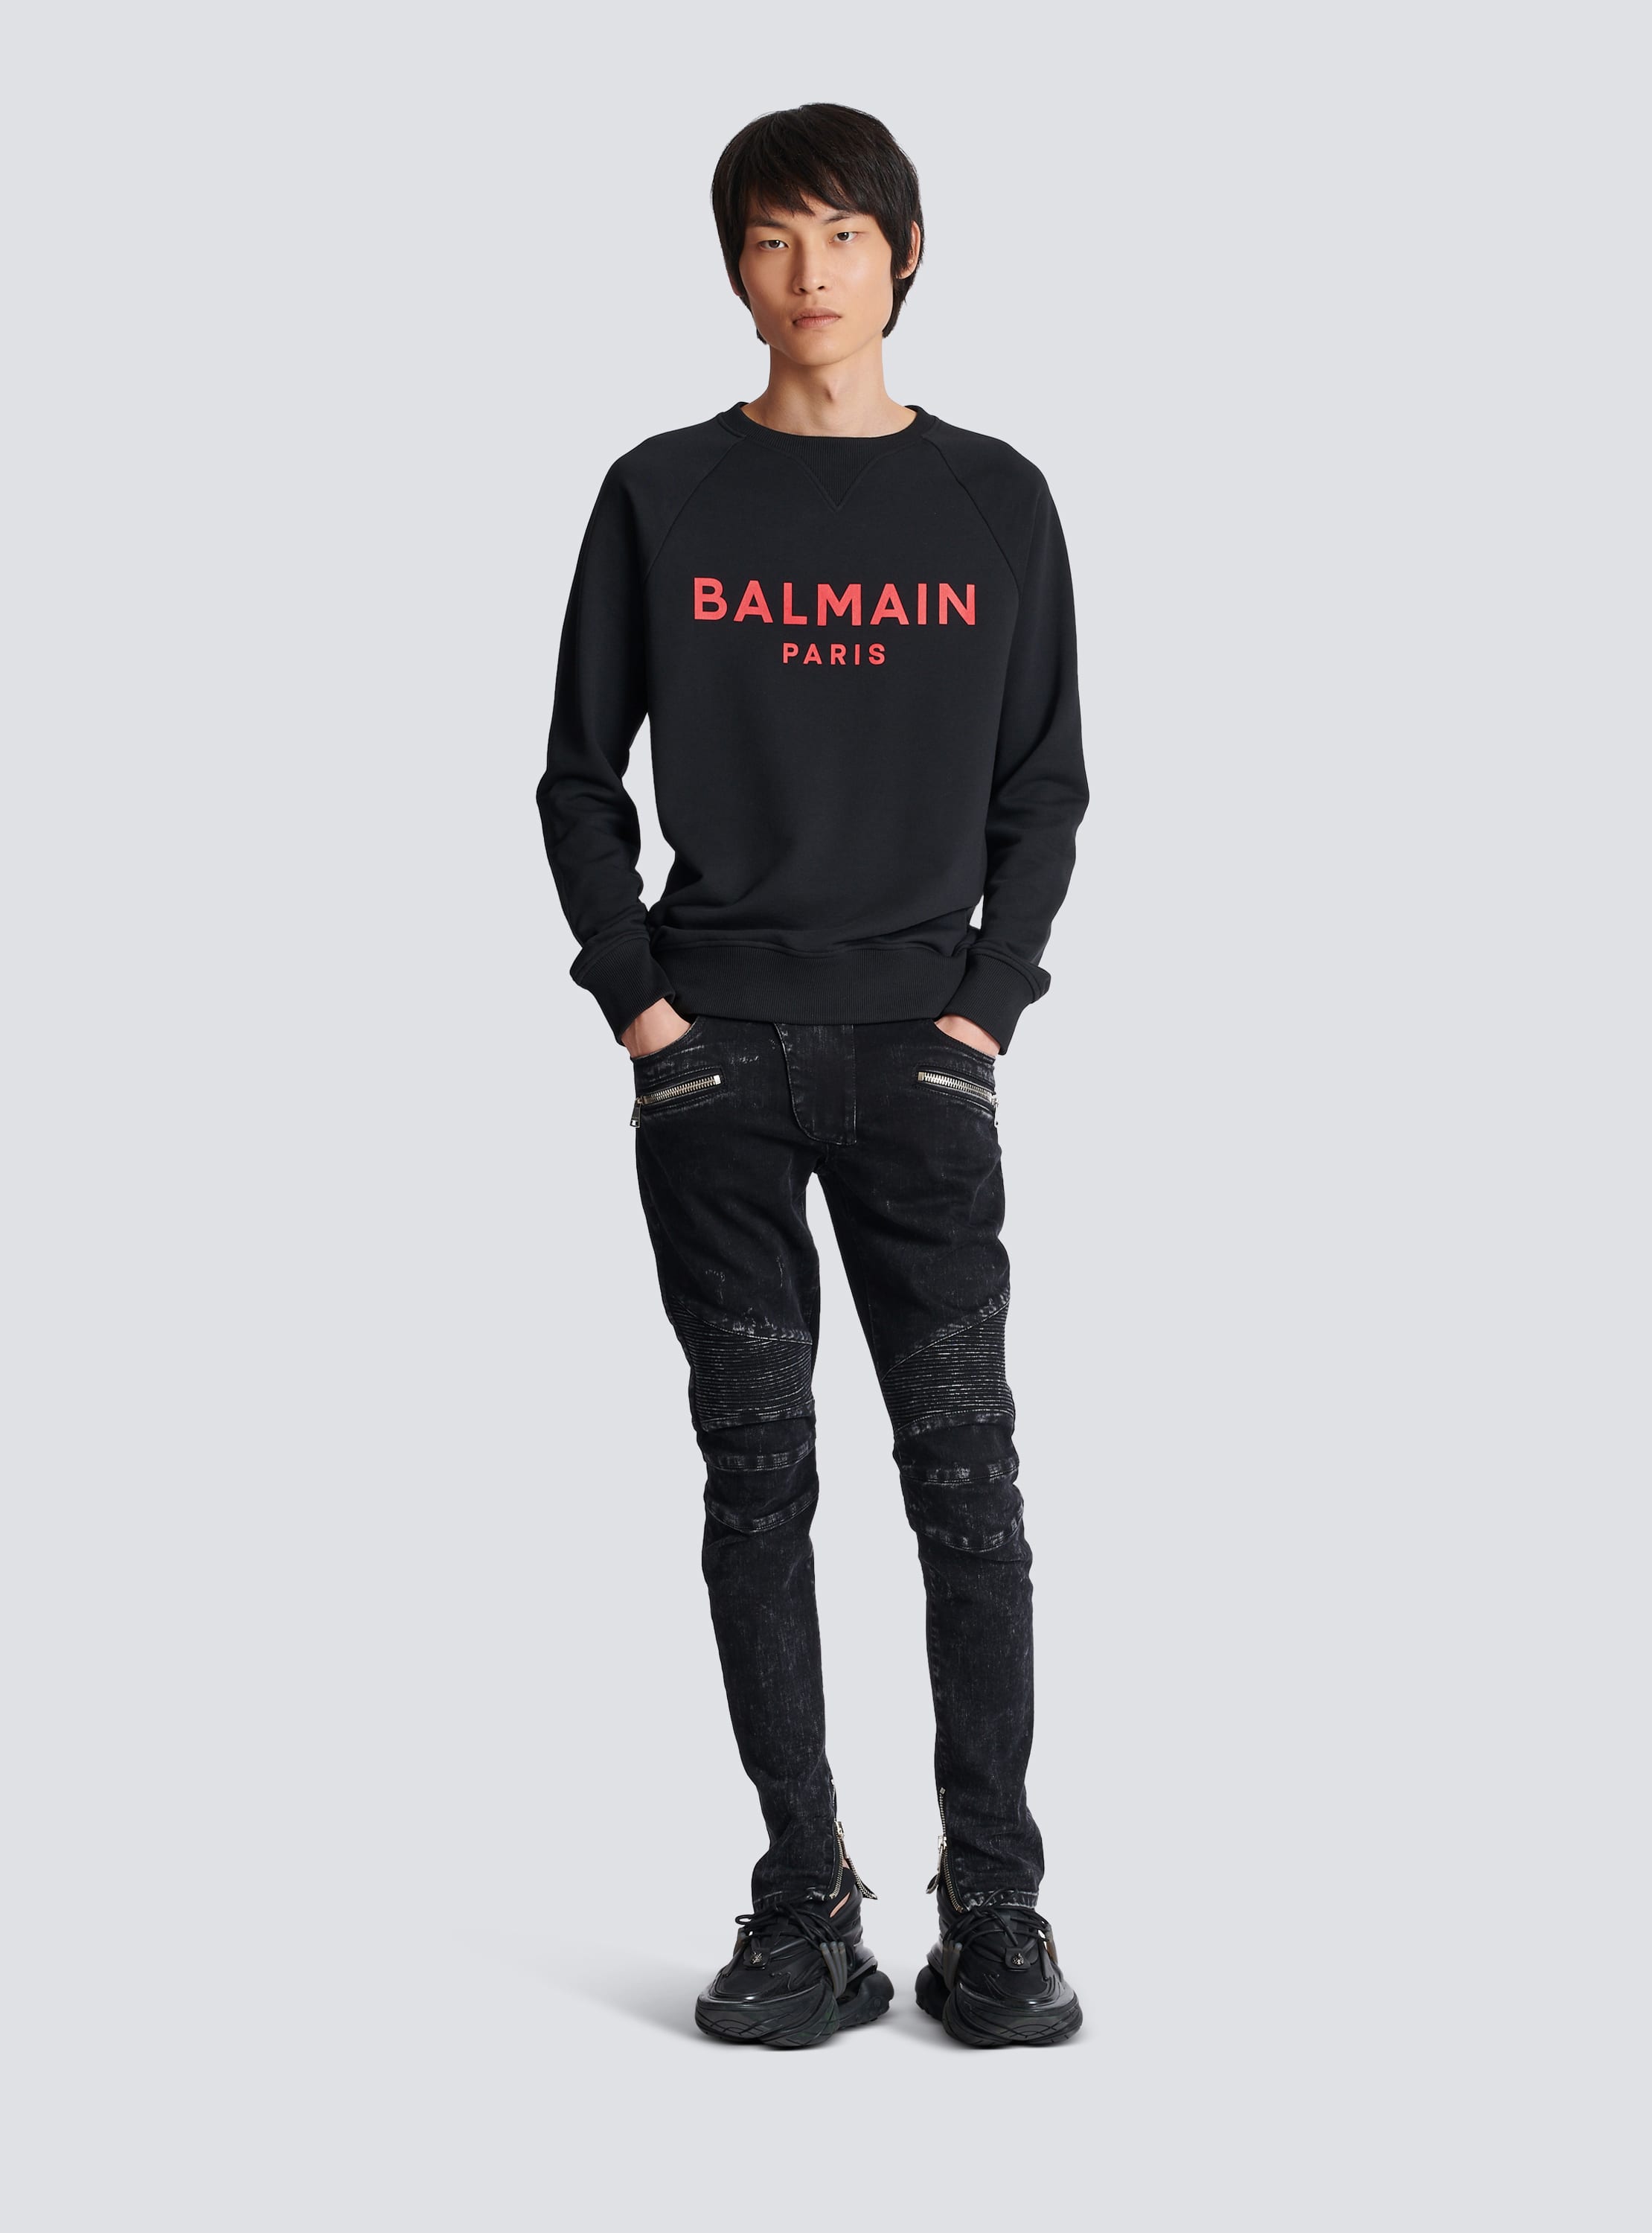 Balmain Paris 프린트 장식 스웨트셔츠 